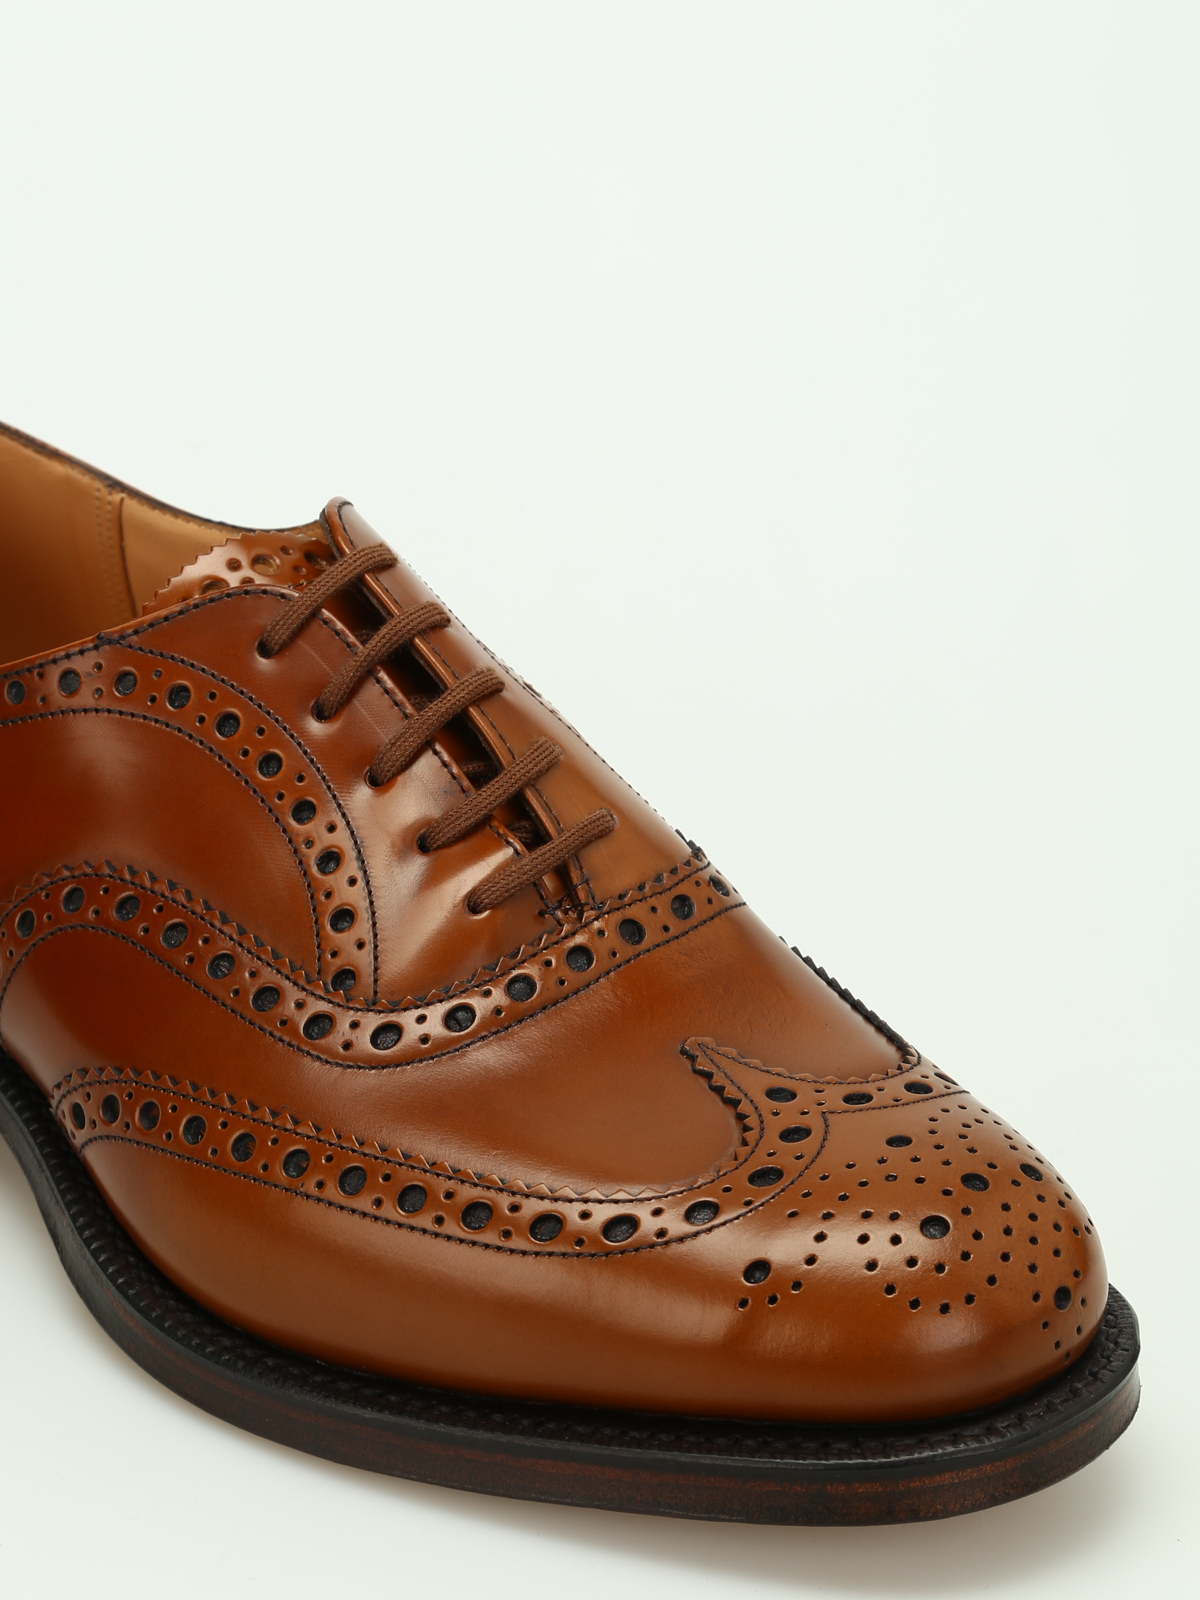 burwood shoes manufacturer